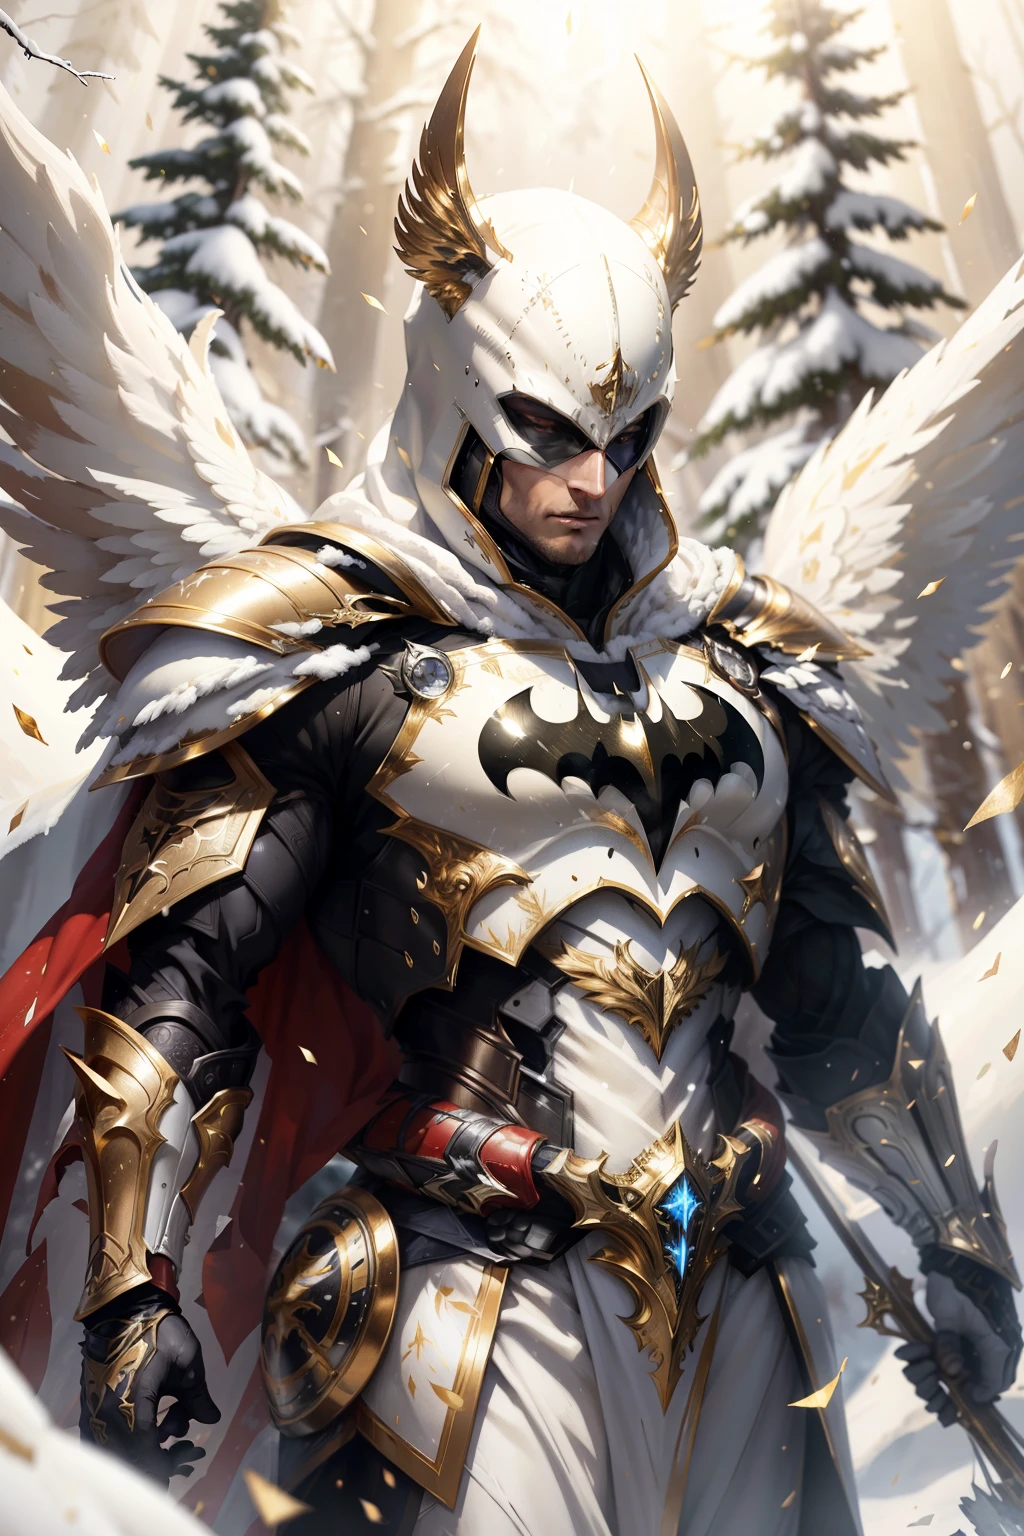 蝙蝠俠全身在白色, 金紅鎧甲套裝, 在白雪皚皚的森林裡, 雪花落在鎧甲上, 罪惡照耀著鎧甲套裝, 超現實, 逼真的, 複雜的面料細節, 針尖藤蔓元素, 照片寫實主義, 24k分辨率, 萊昂納多·達·芬奇獲獎照片的超細節藝術風格